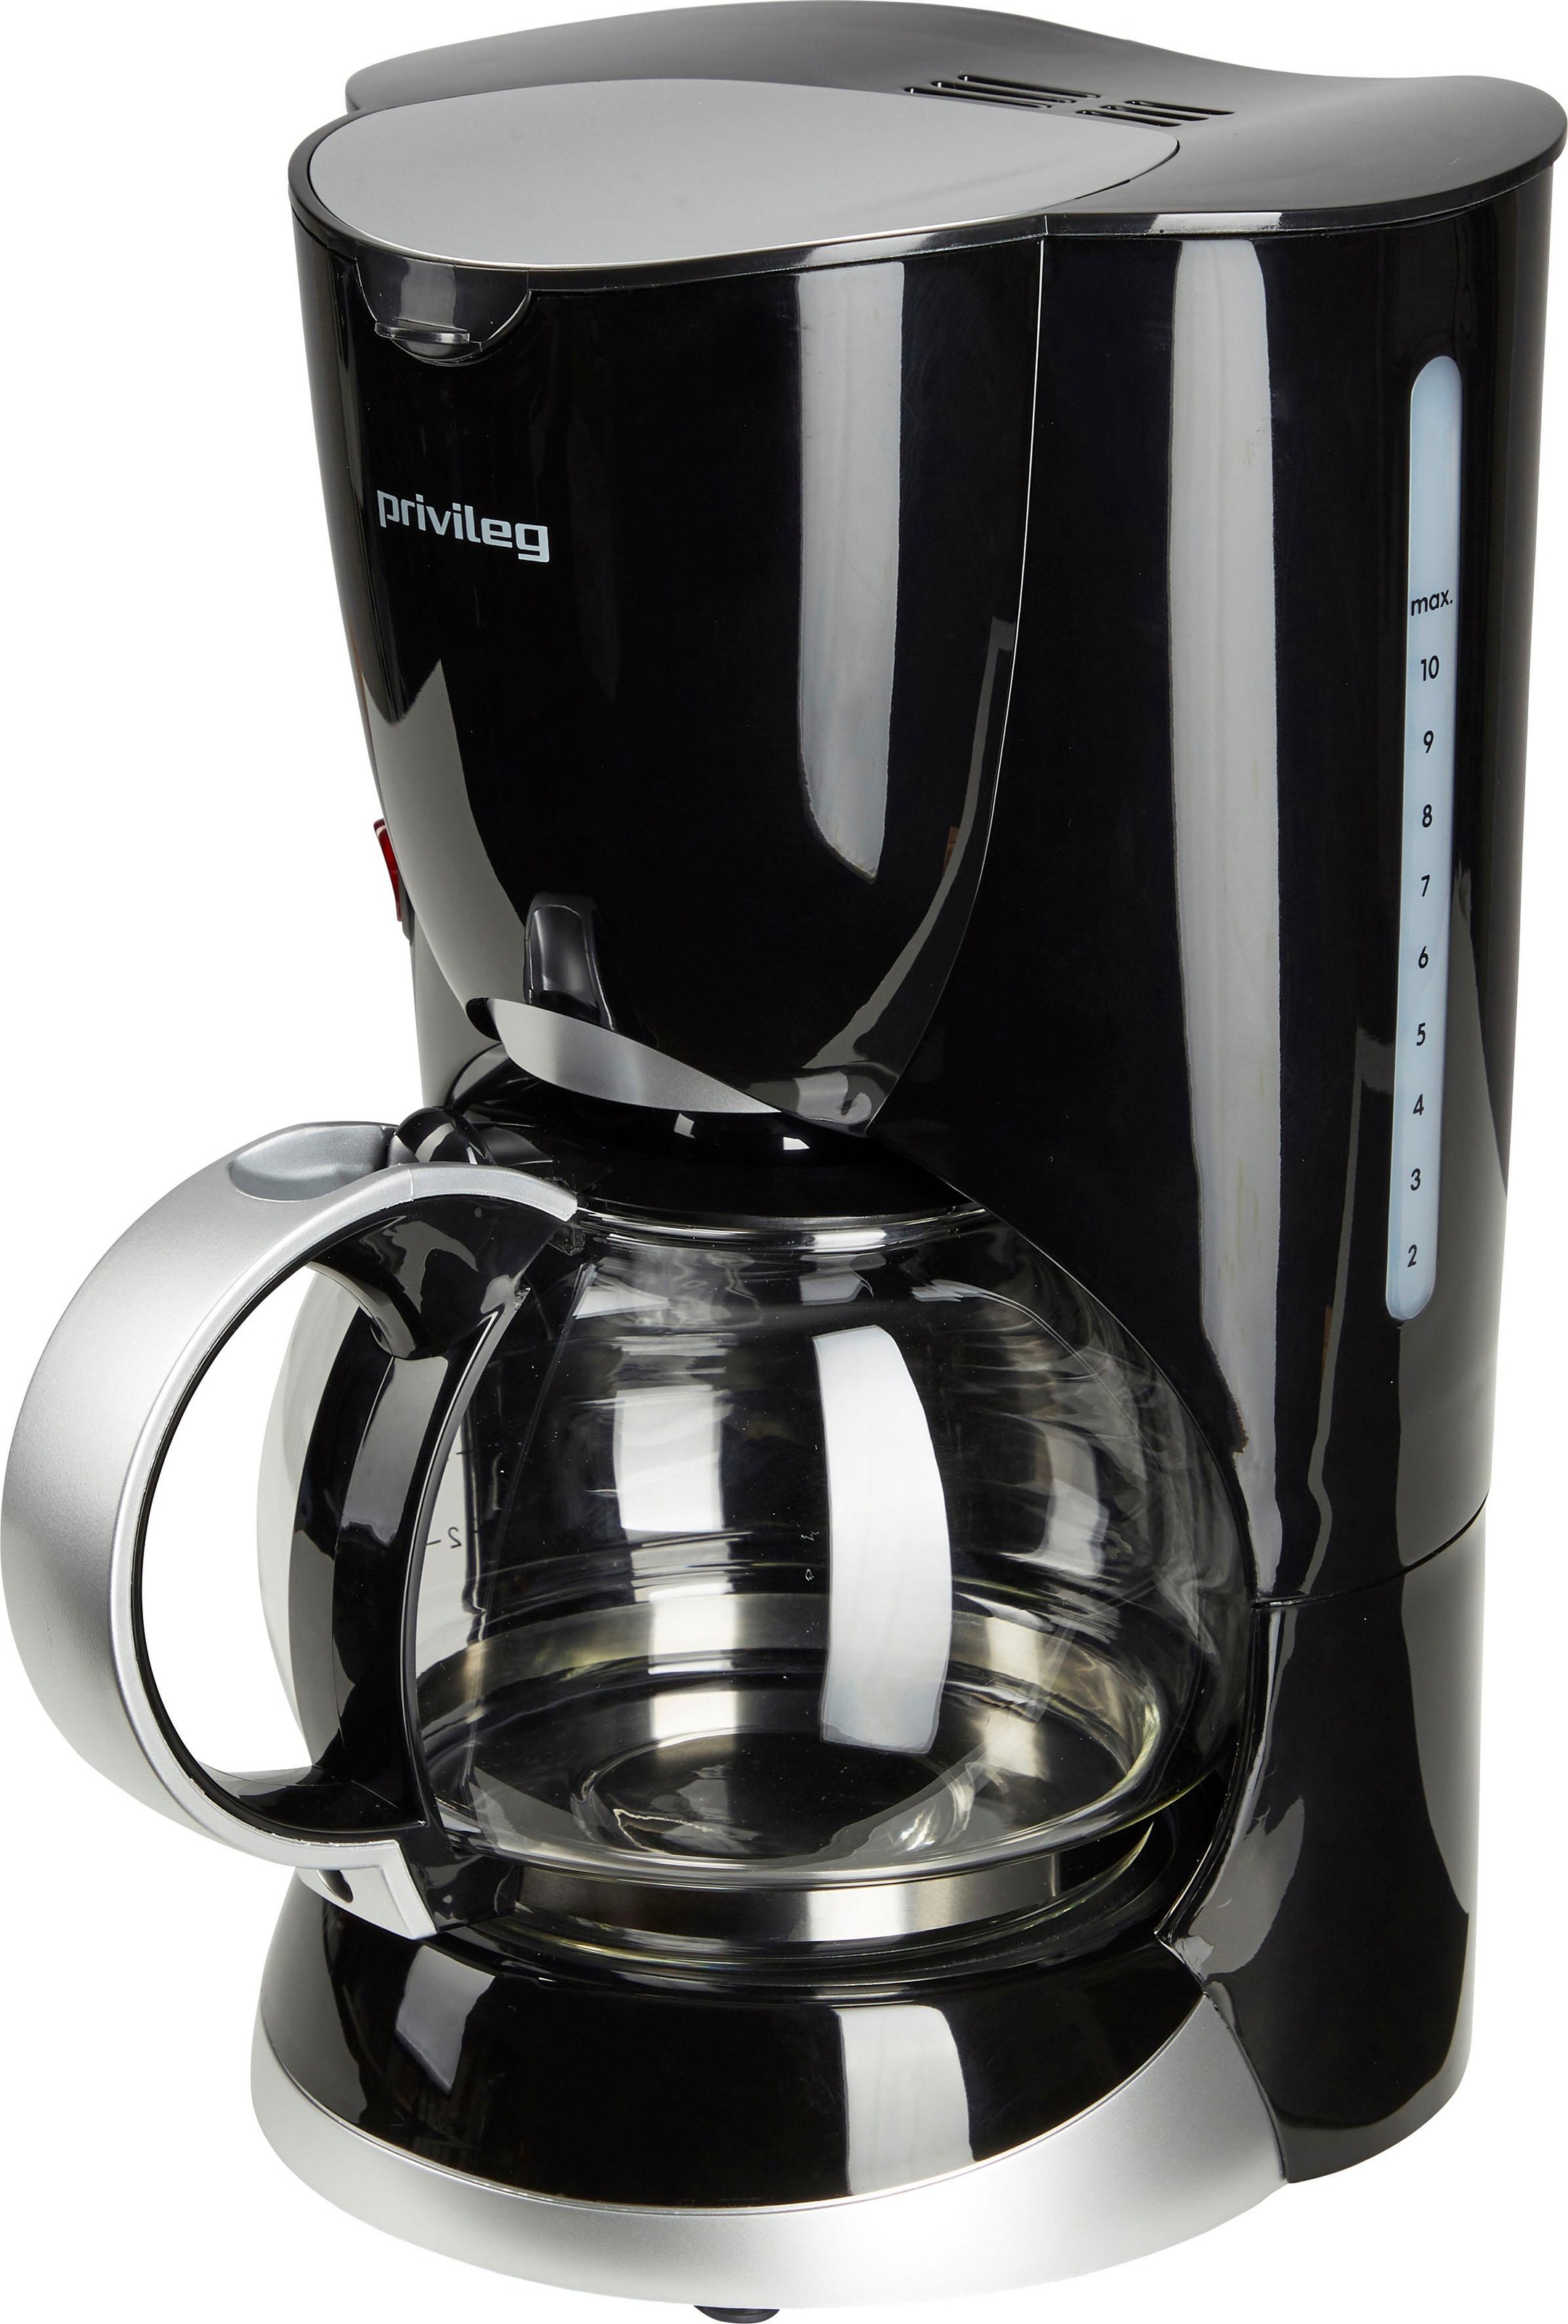 Privileg Filterkaffeemaschine »Max. 1080 Watt«, 1,37 l Kaffeekanne,  Papierfilter, 1x4, schwarz mit 3 Jahren XXL Garantie